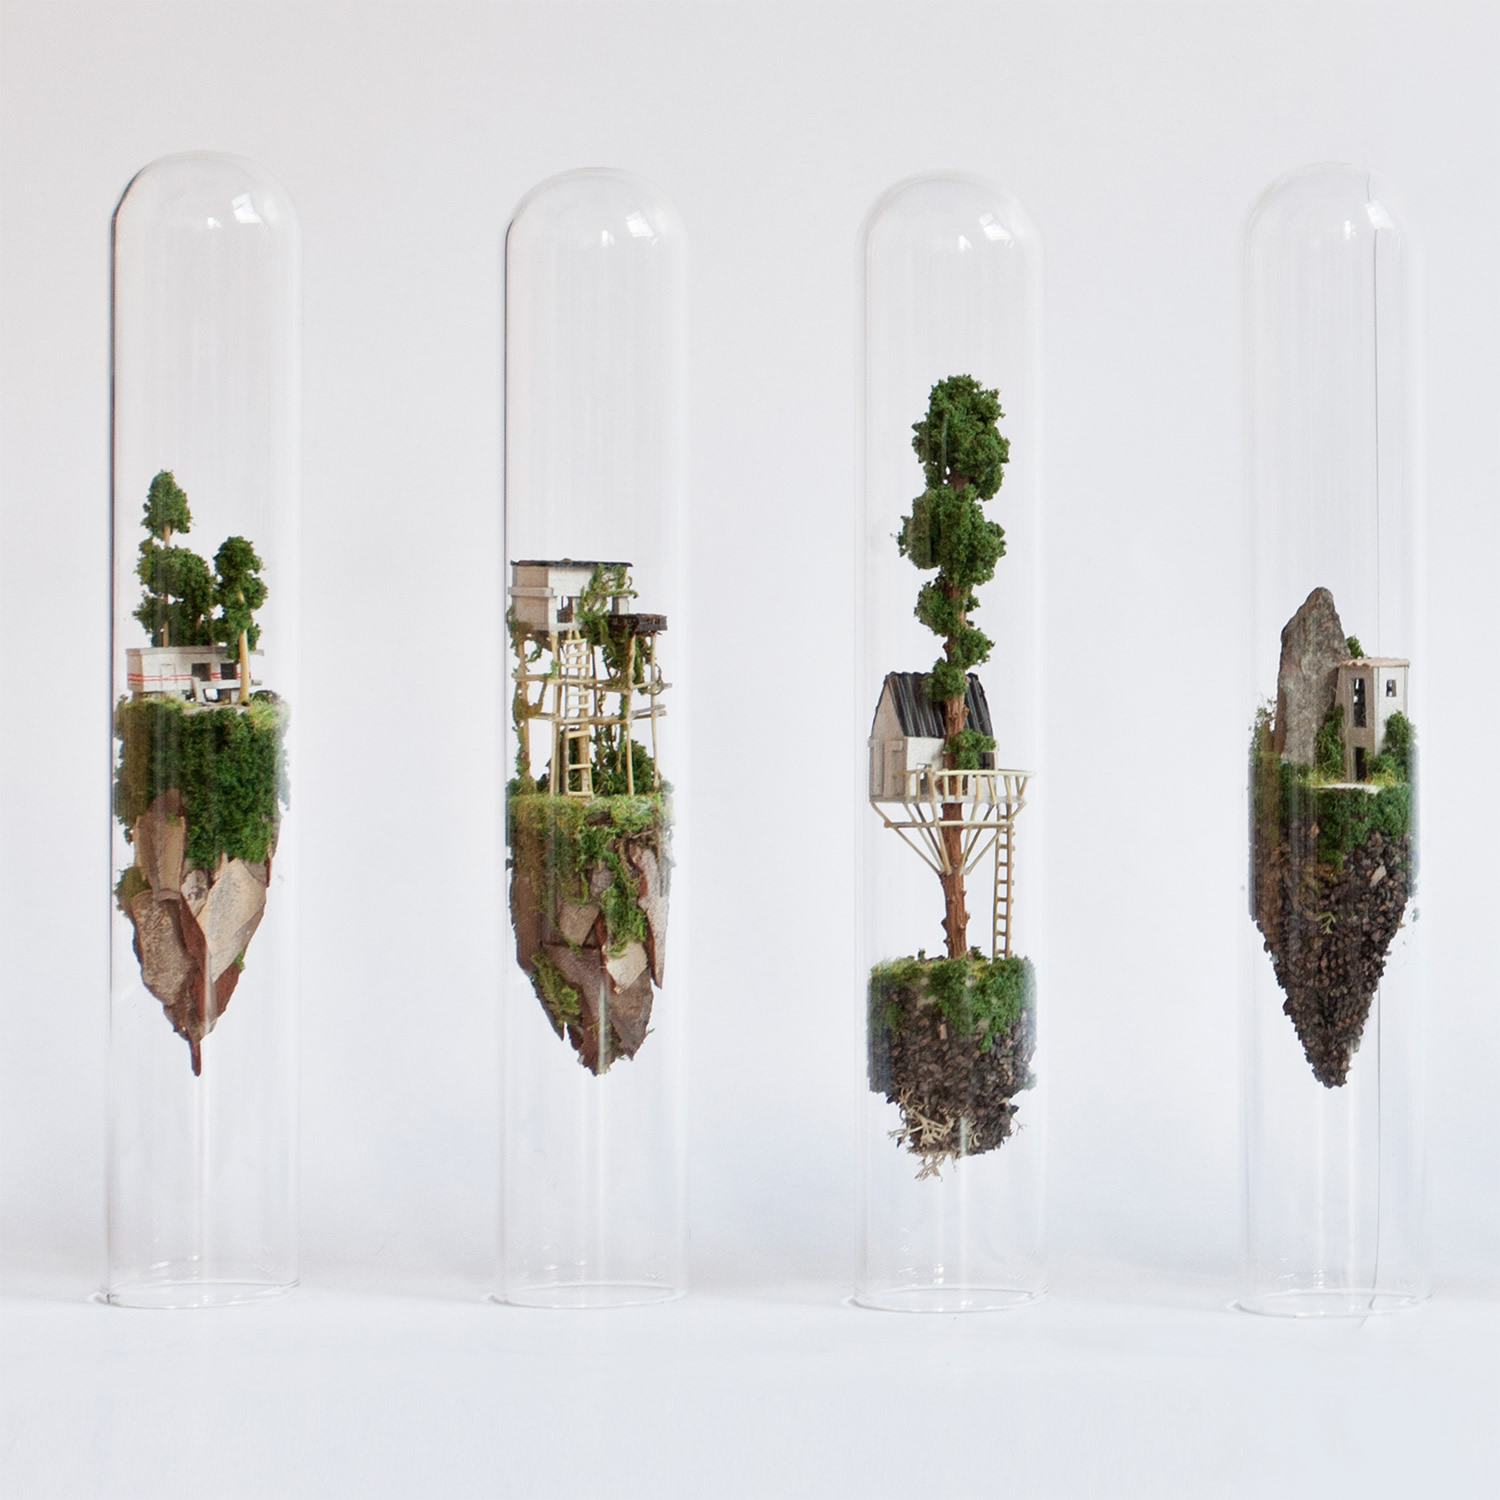 Micro Matter Miniature Sculptures in Glass Test Tubes by Rosa de Jong